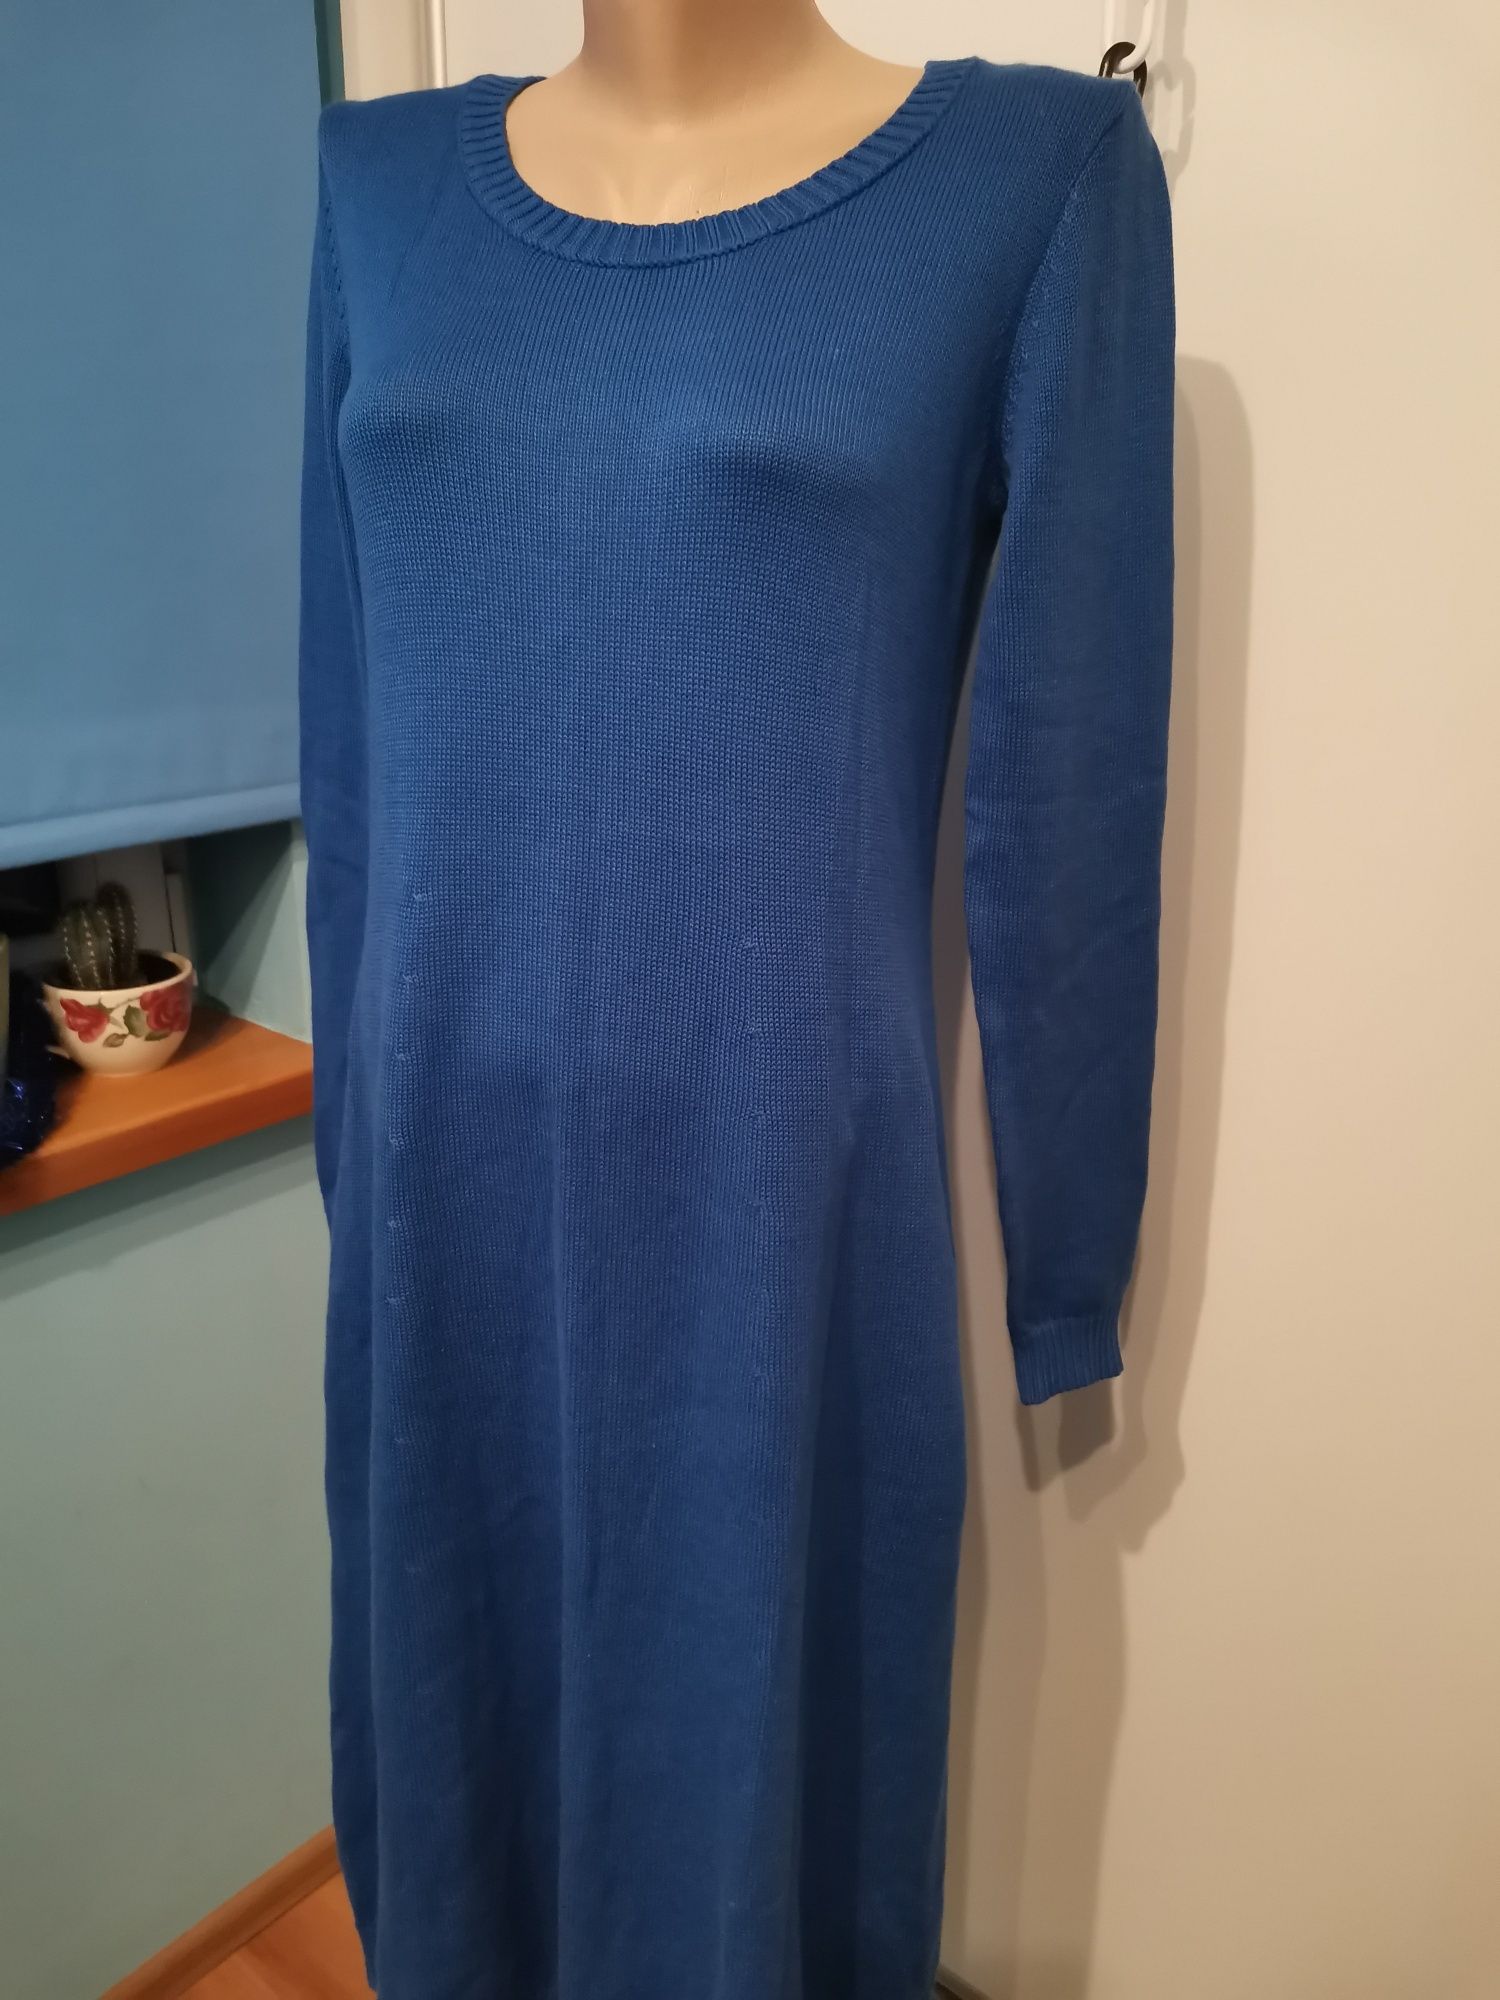 Bonprix Collection dzianinowa sukienka damska rozm 36/38, niebieska